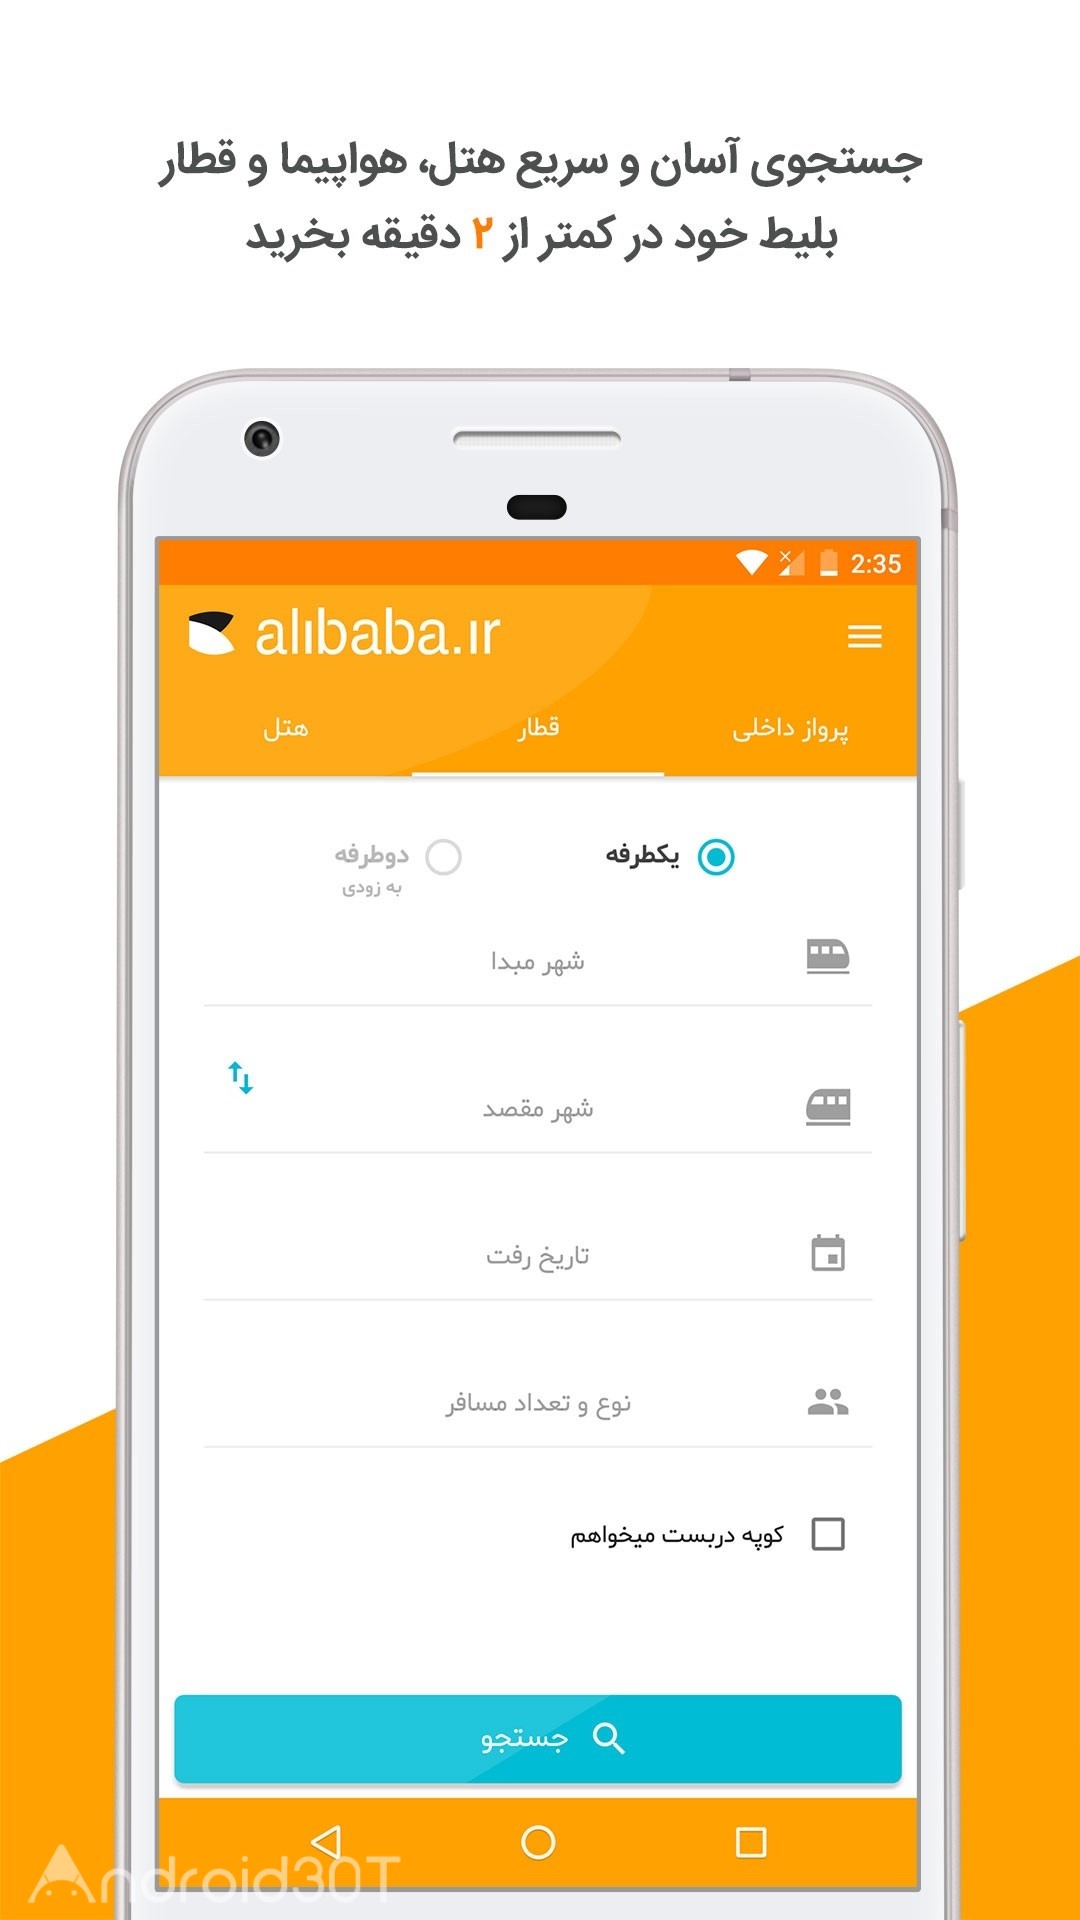 دانلود Alibaba 8.7.0 – برنامه خرید آنلاین بلیط هواپیما علی بابا اندروید